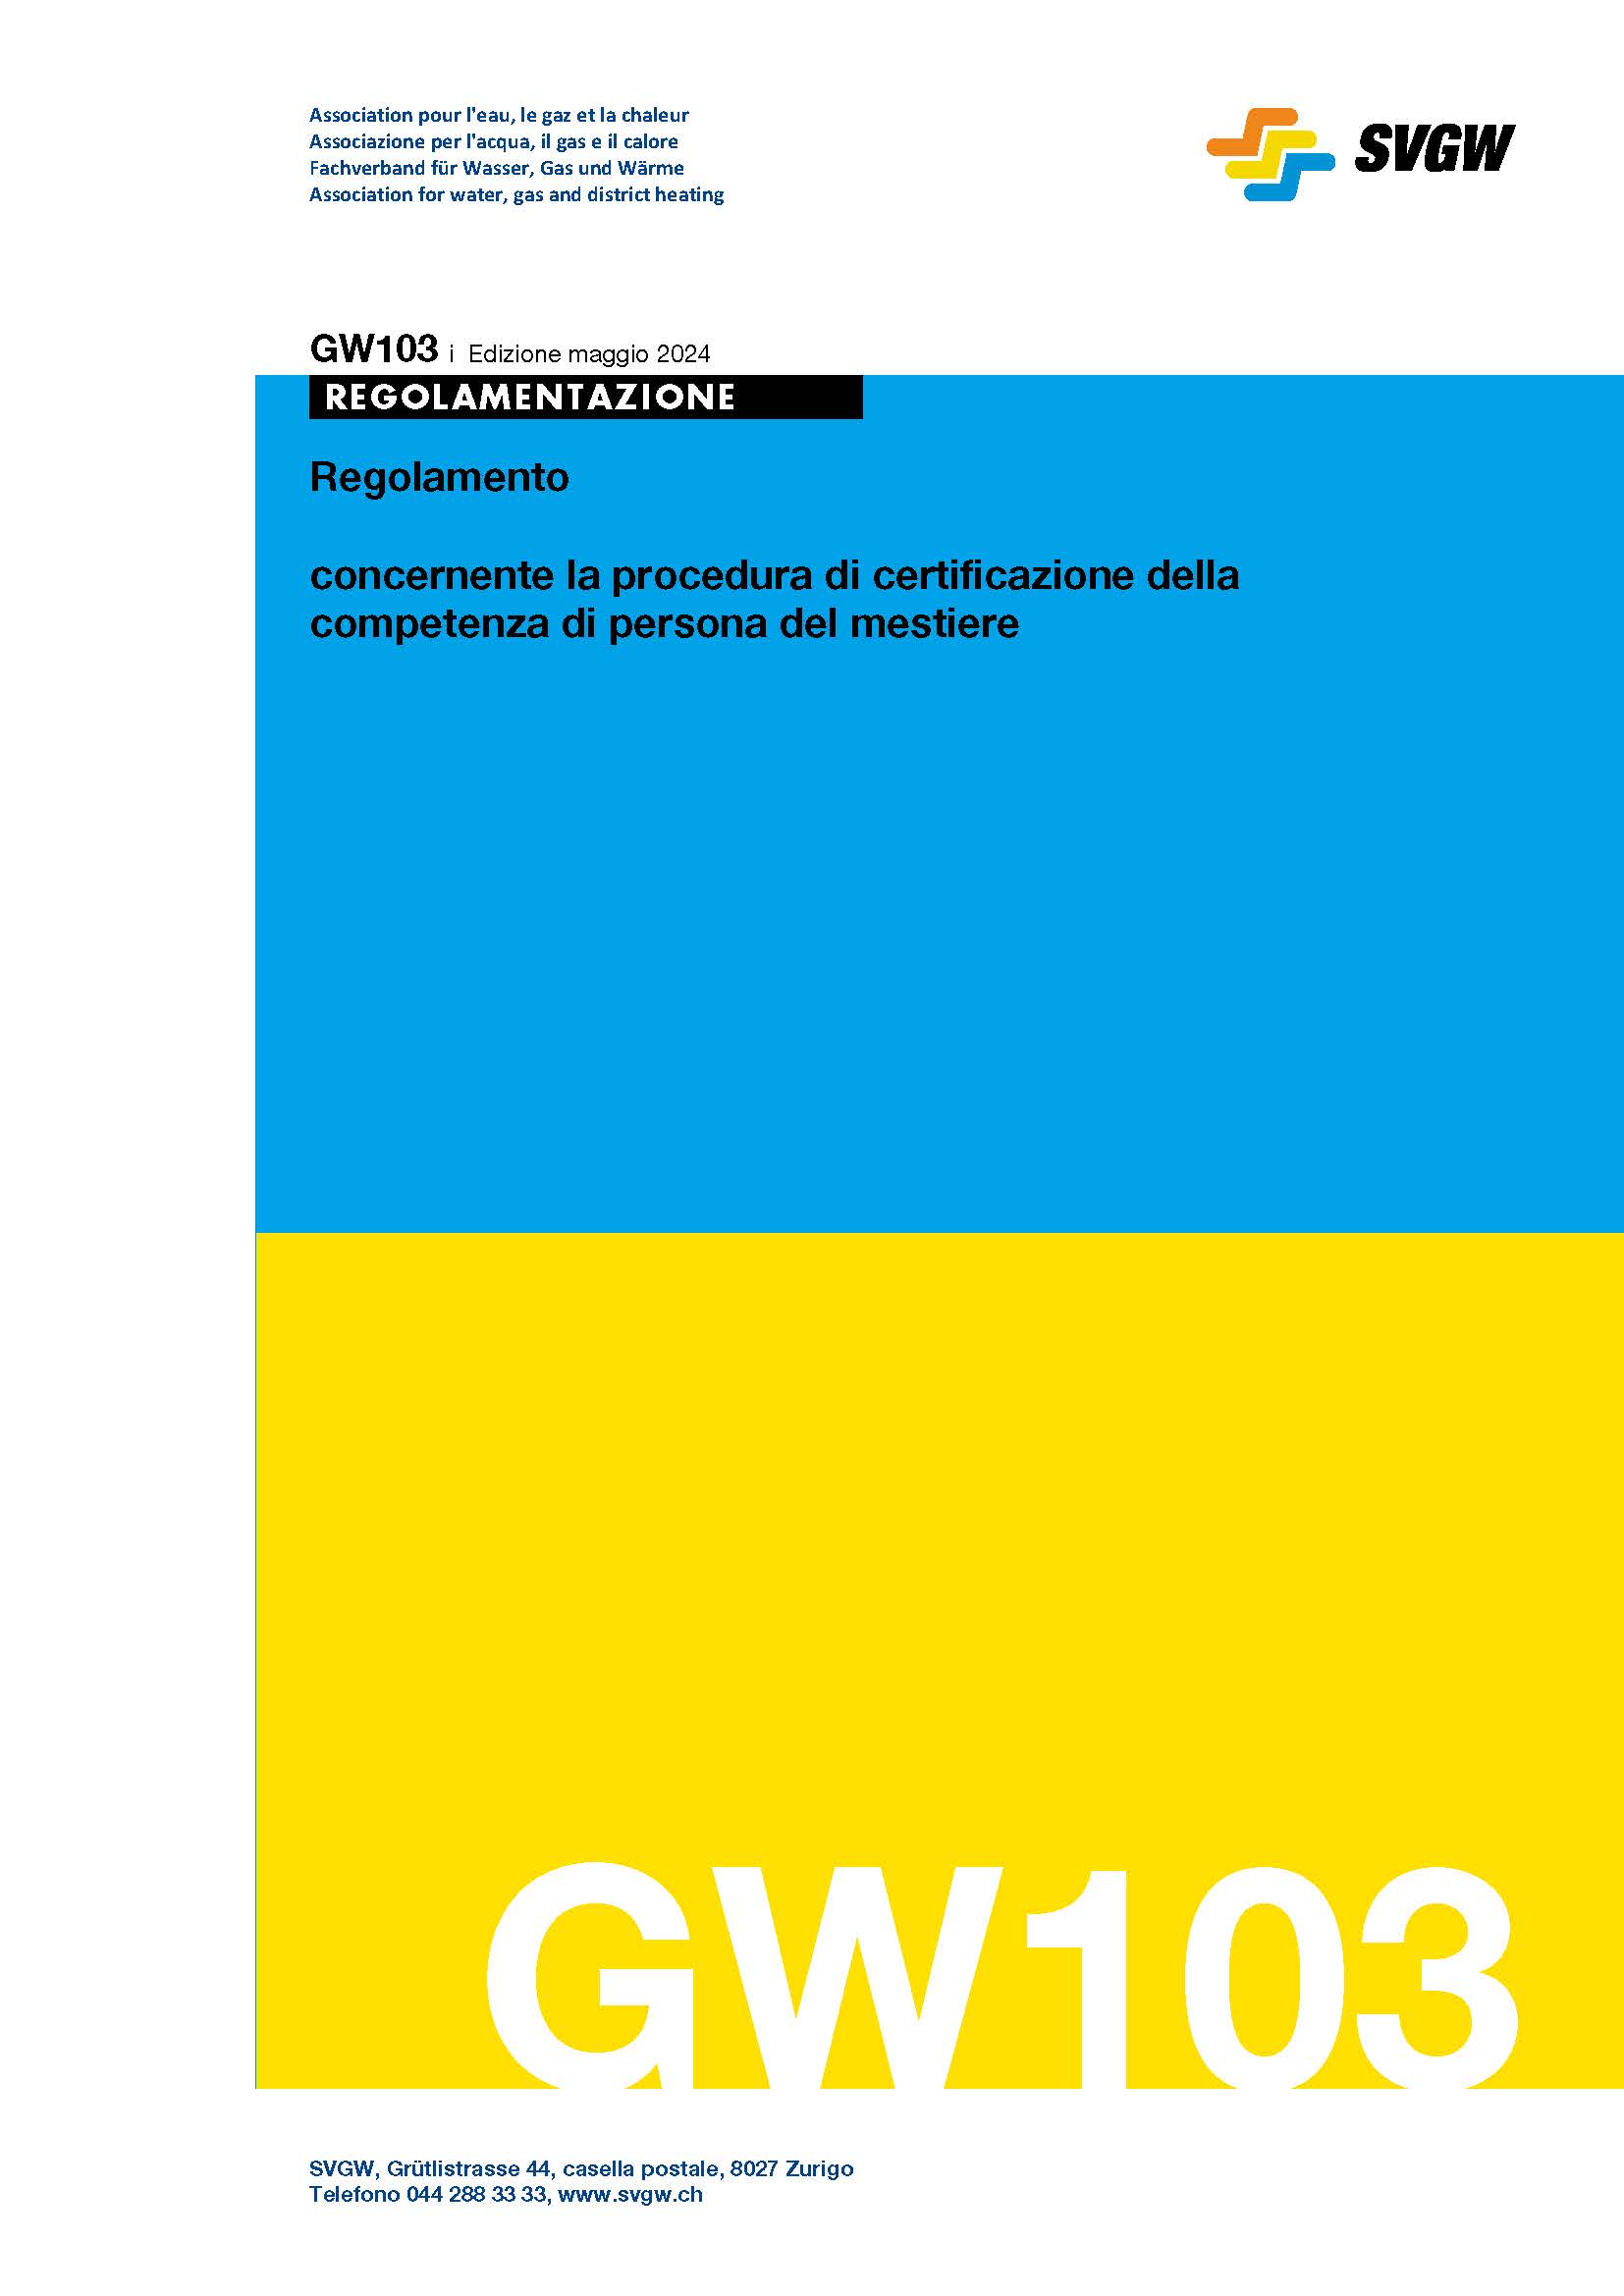 GW103 i Regolamento concernente la procedura di certificazione della competenza di persona del mestiere